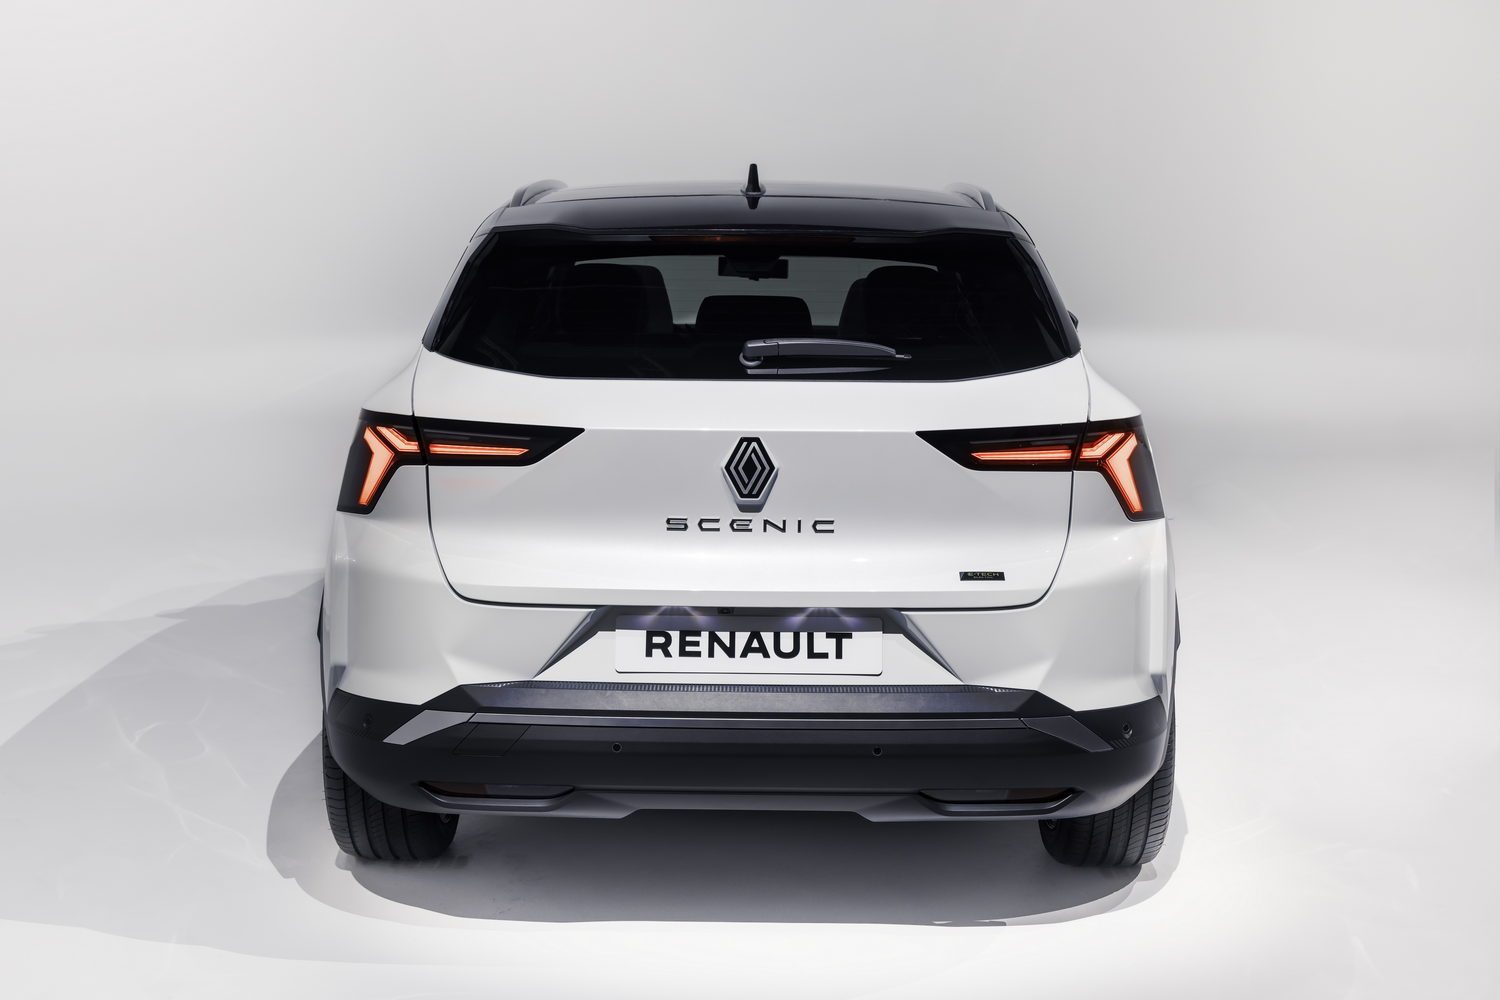 New Renault Scenic EV gets 620km range